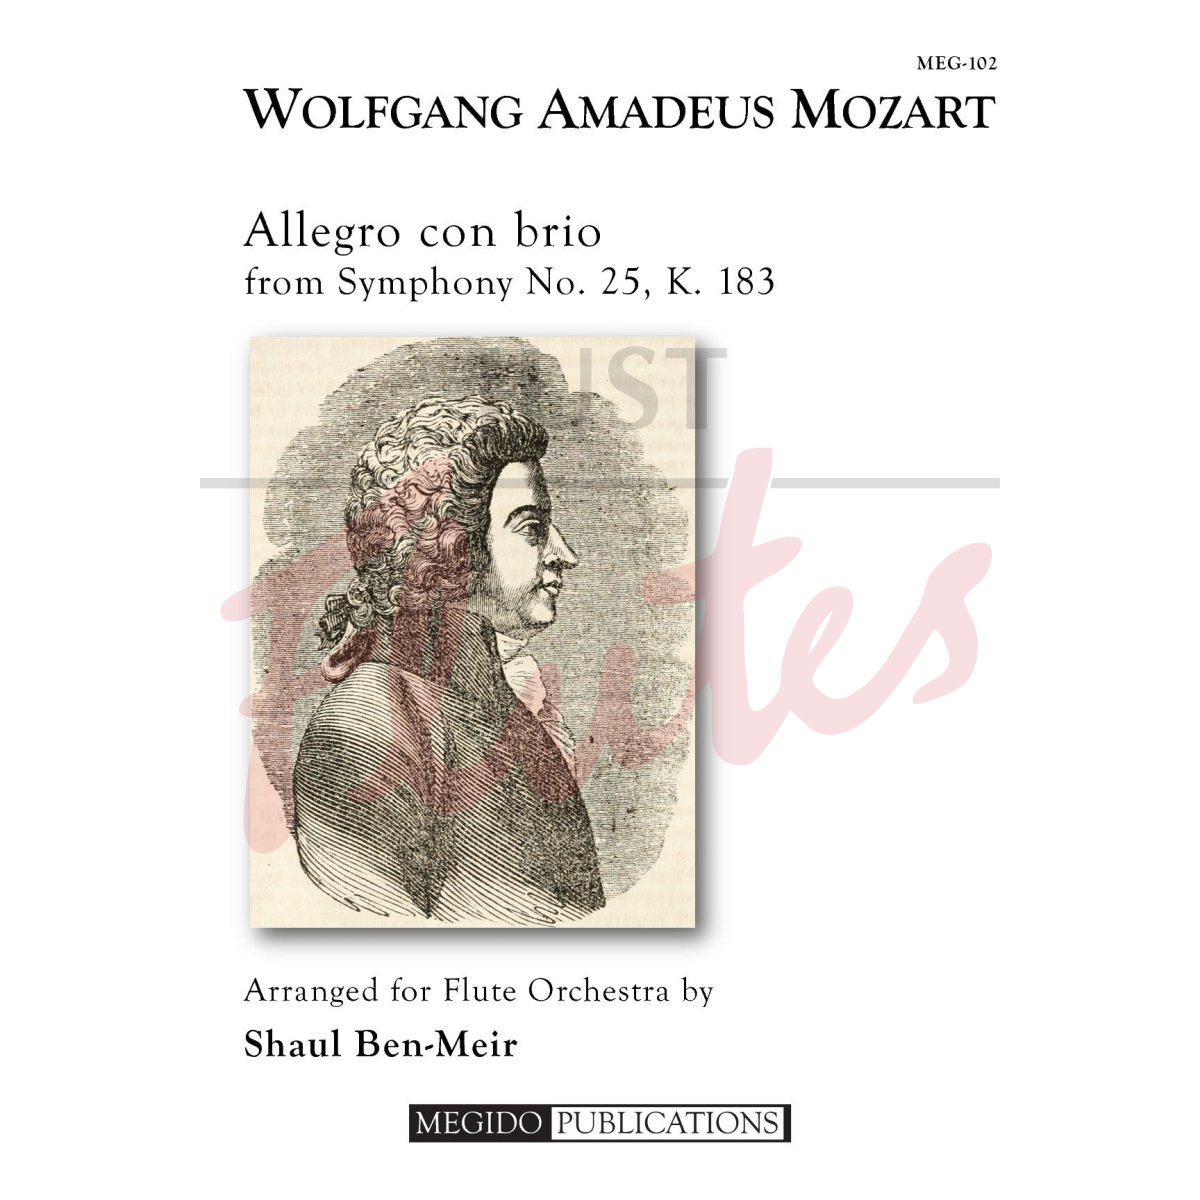 Allegro con brio from Symphony No. 25 for Flute Orchestra